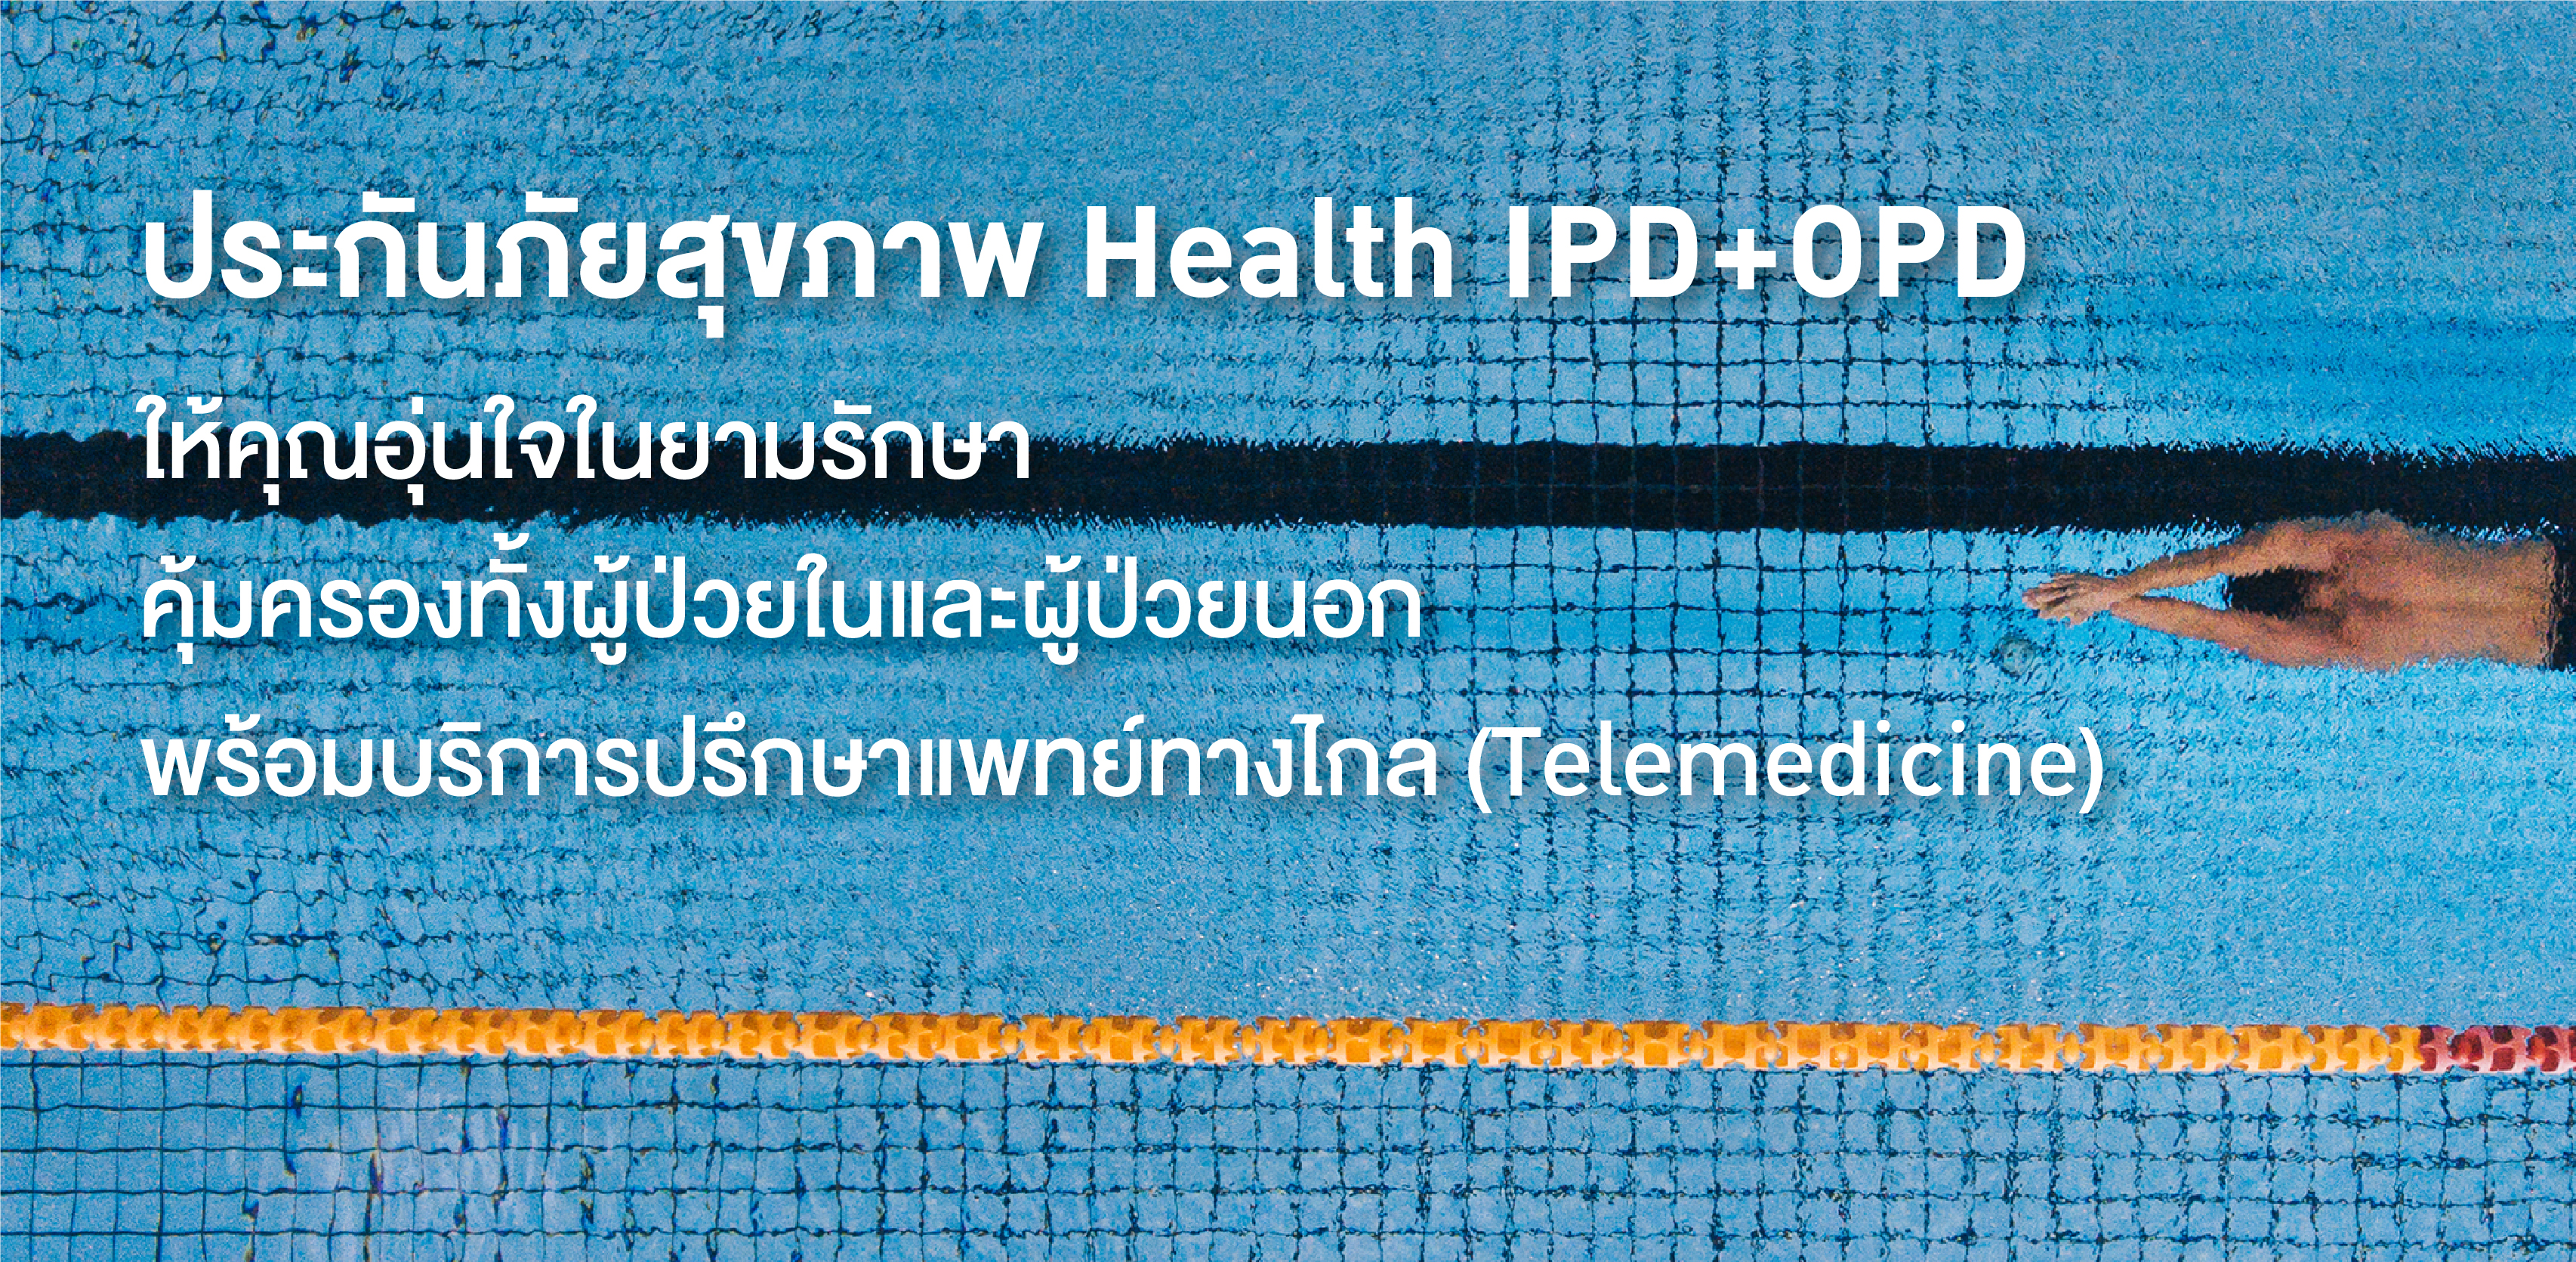 ประกันภัยสุขภาพ Health IPD+OPD